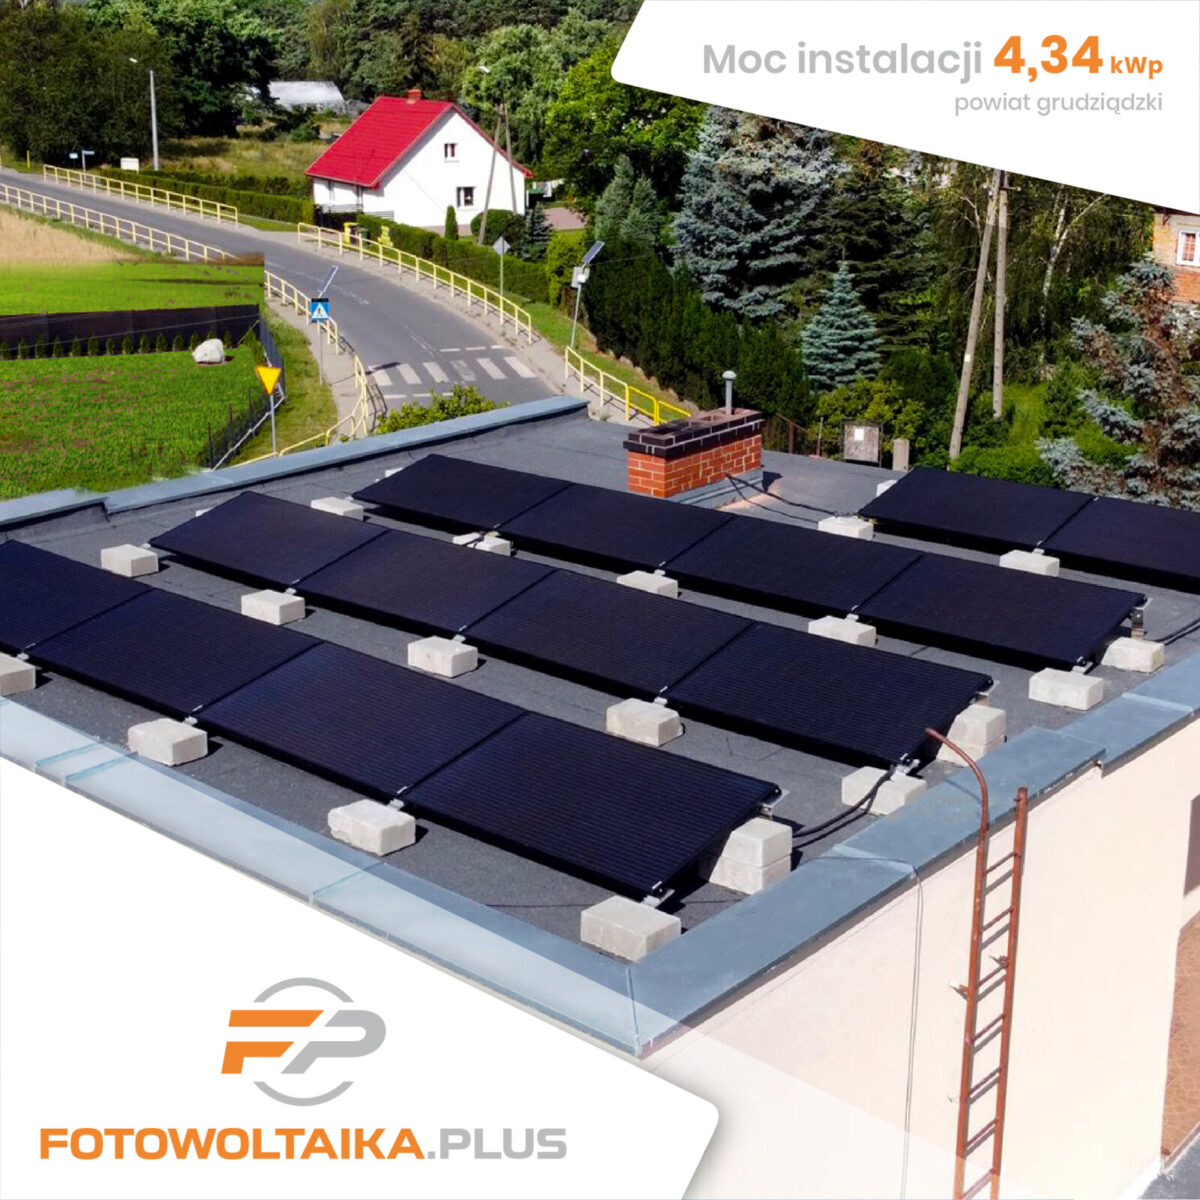 instalacja fotowoltaiczna 4,34 kWp powiat grudziądzki